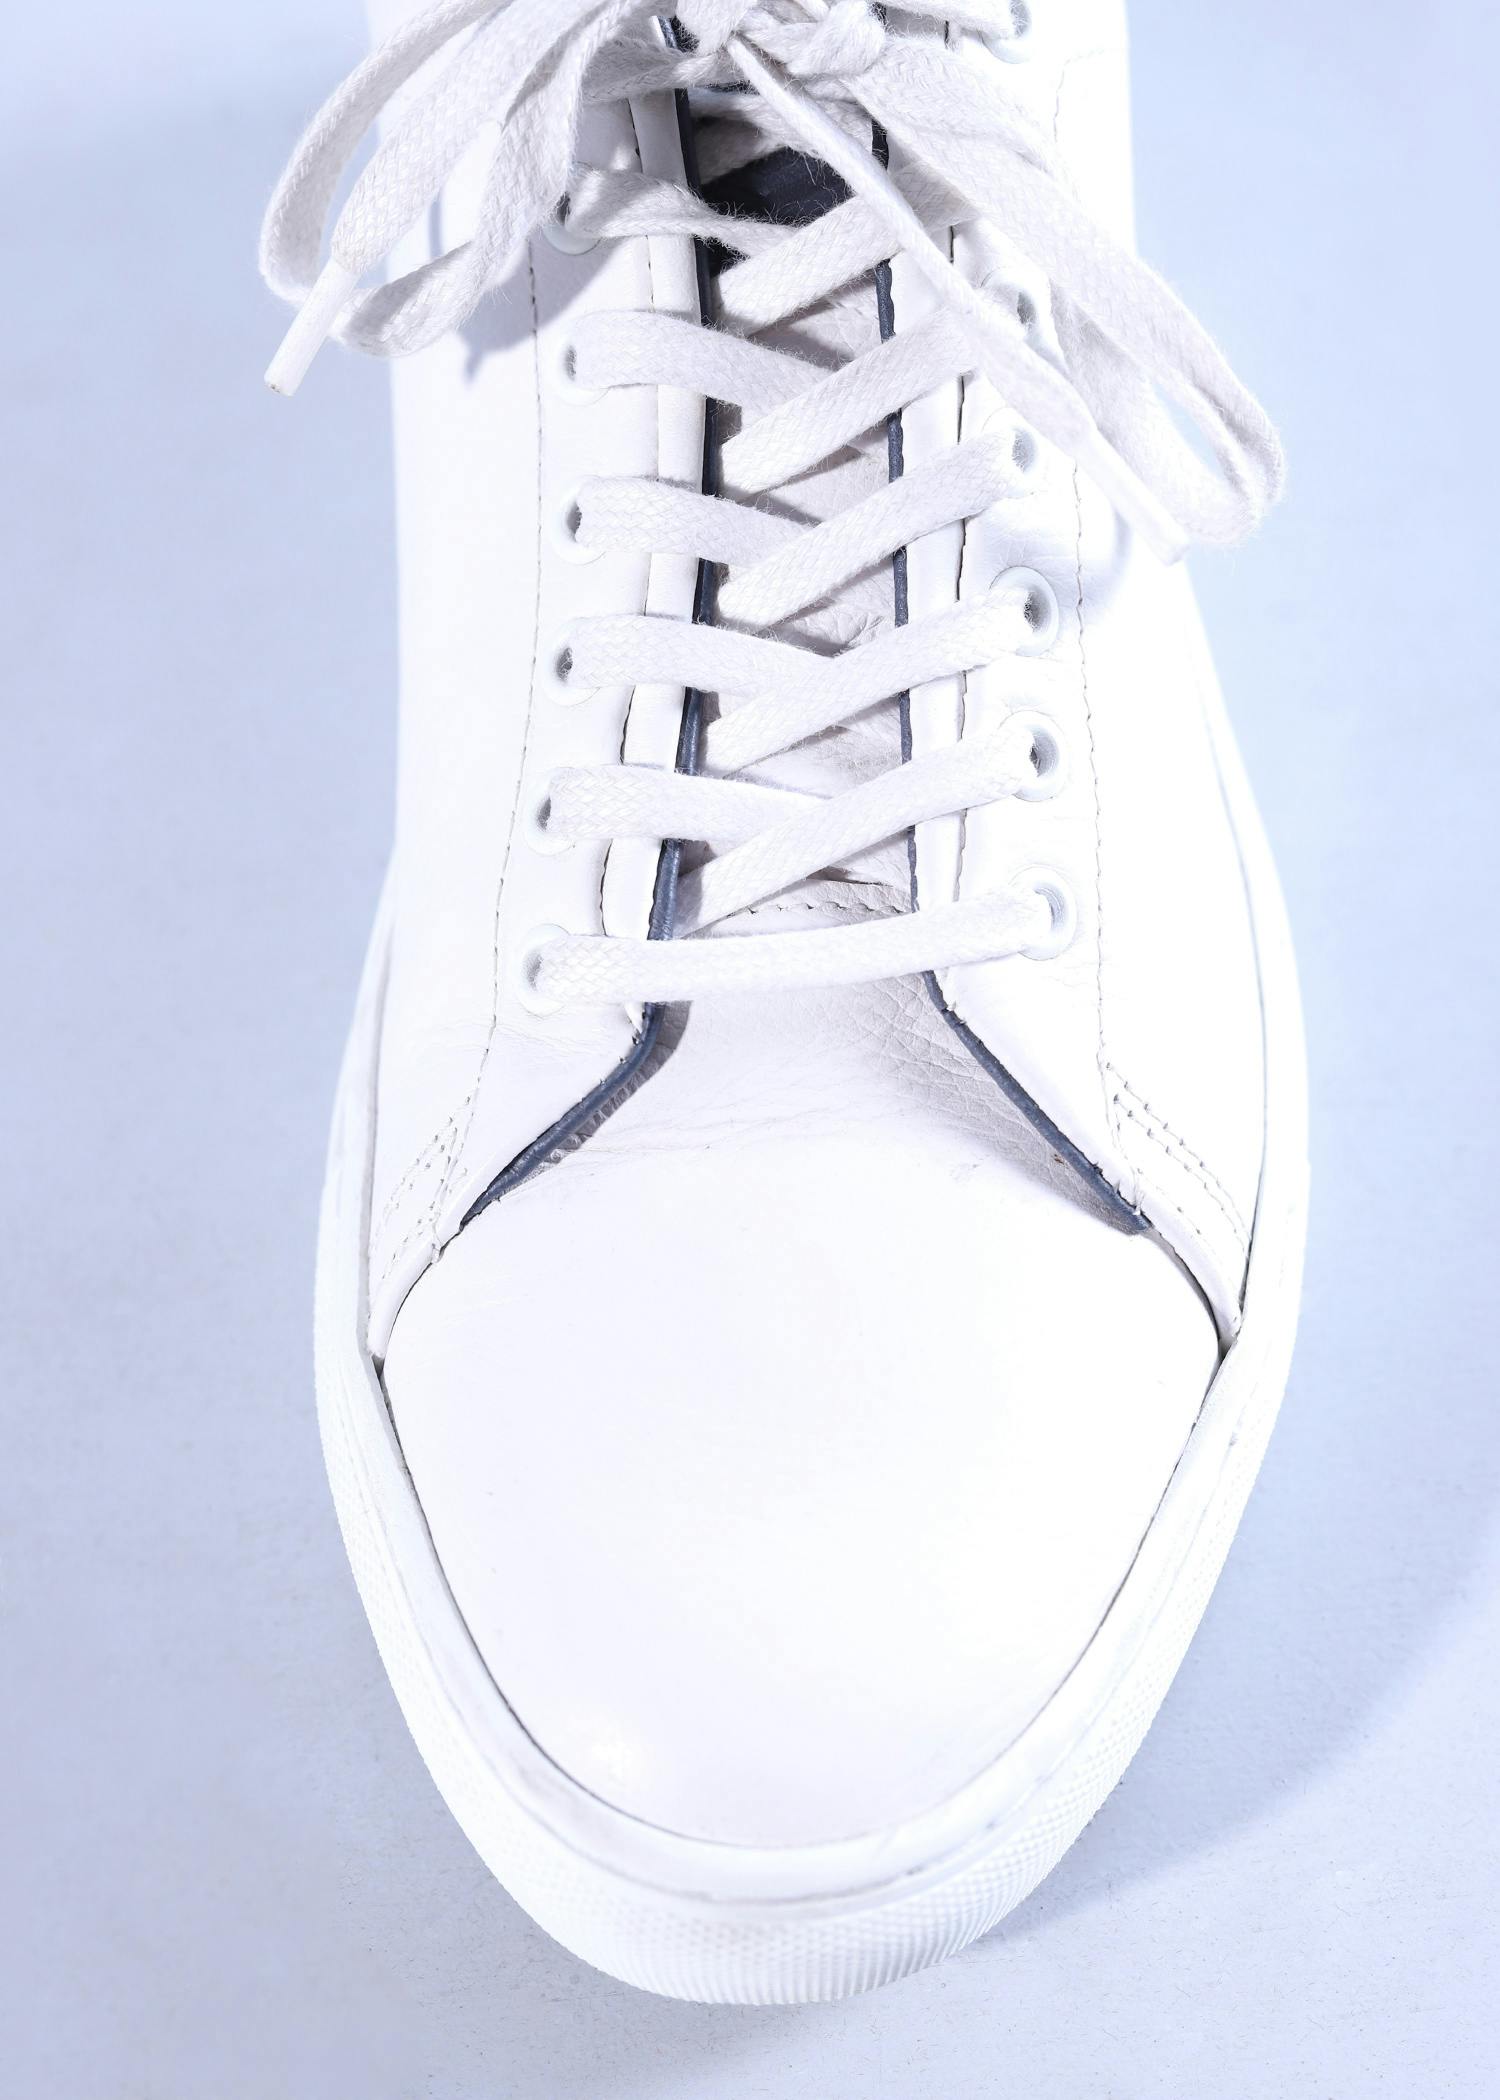 snow rabbit mens shoes white color top close